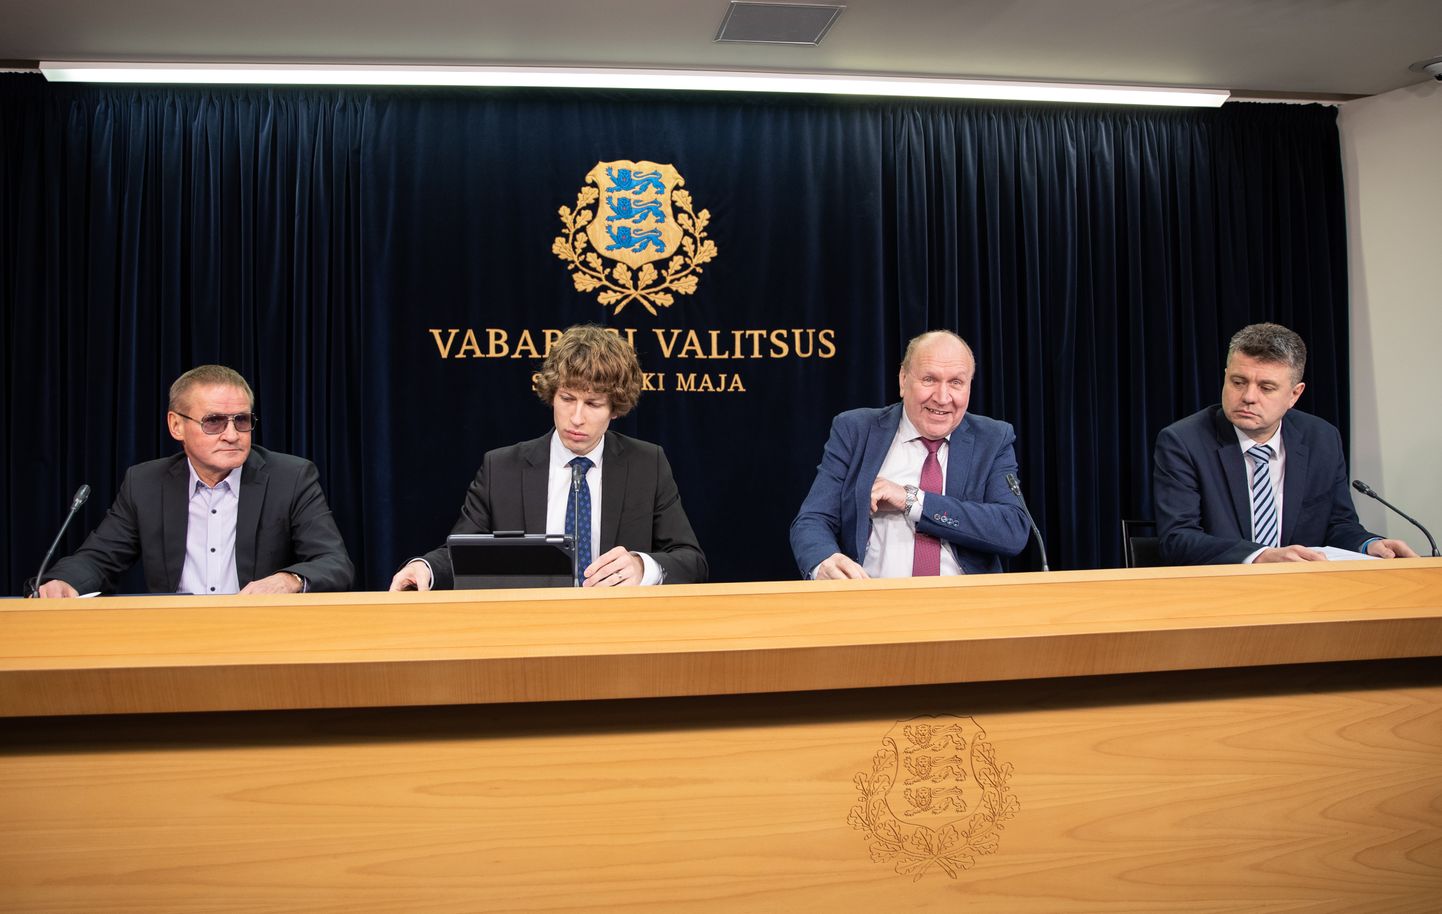 Министры (слева направо): Яак Ааб, Танель Кийк, Март Хельме, Урмас Рейнсалу.